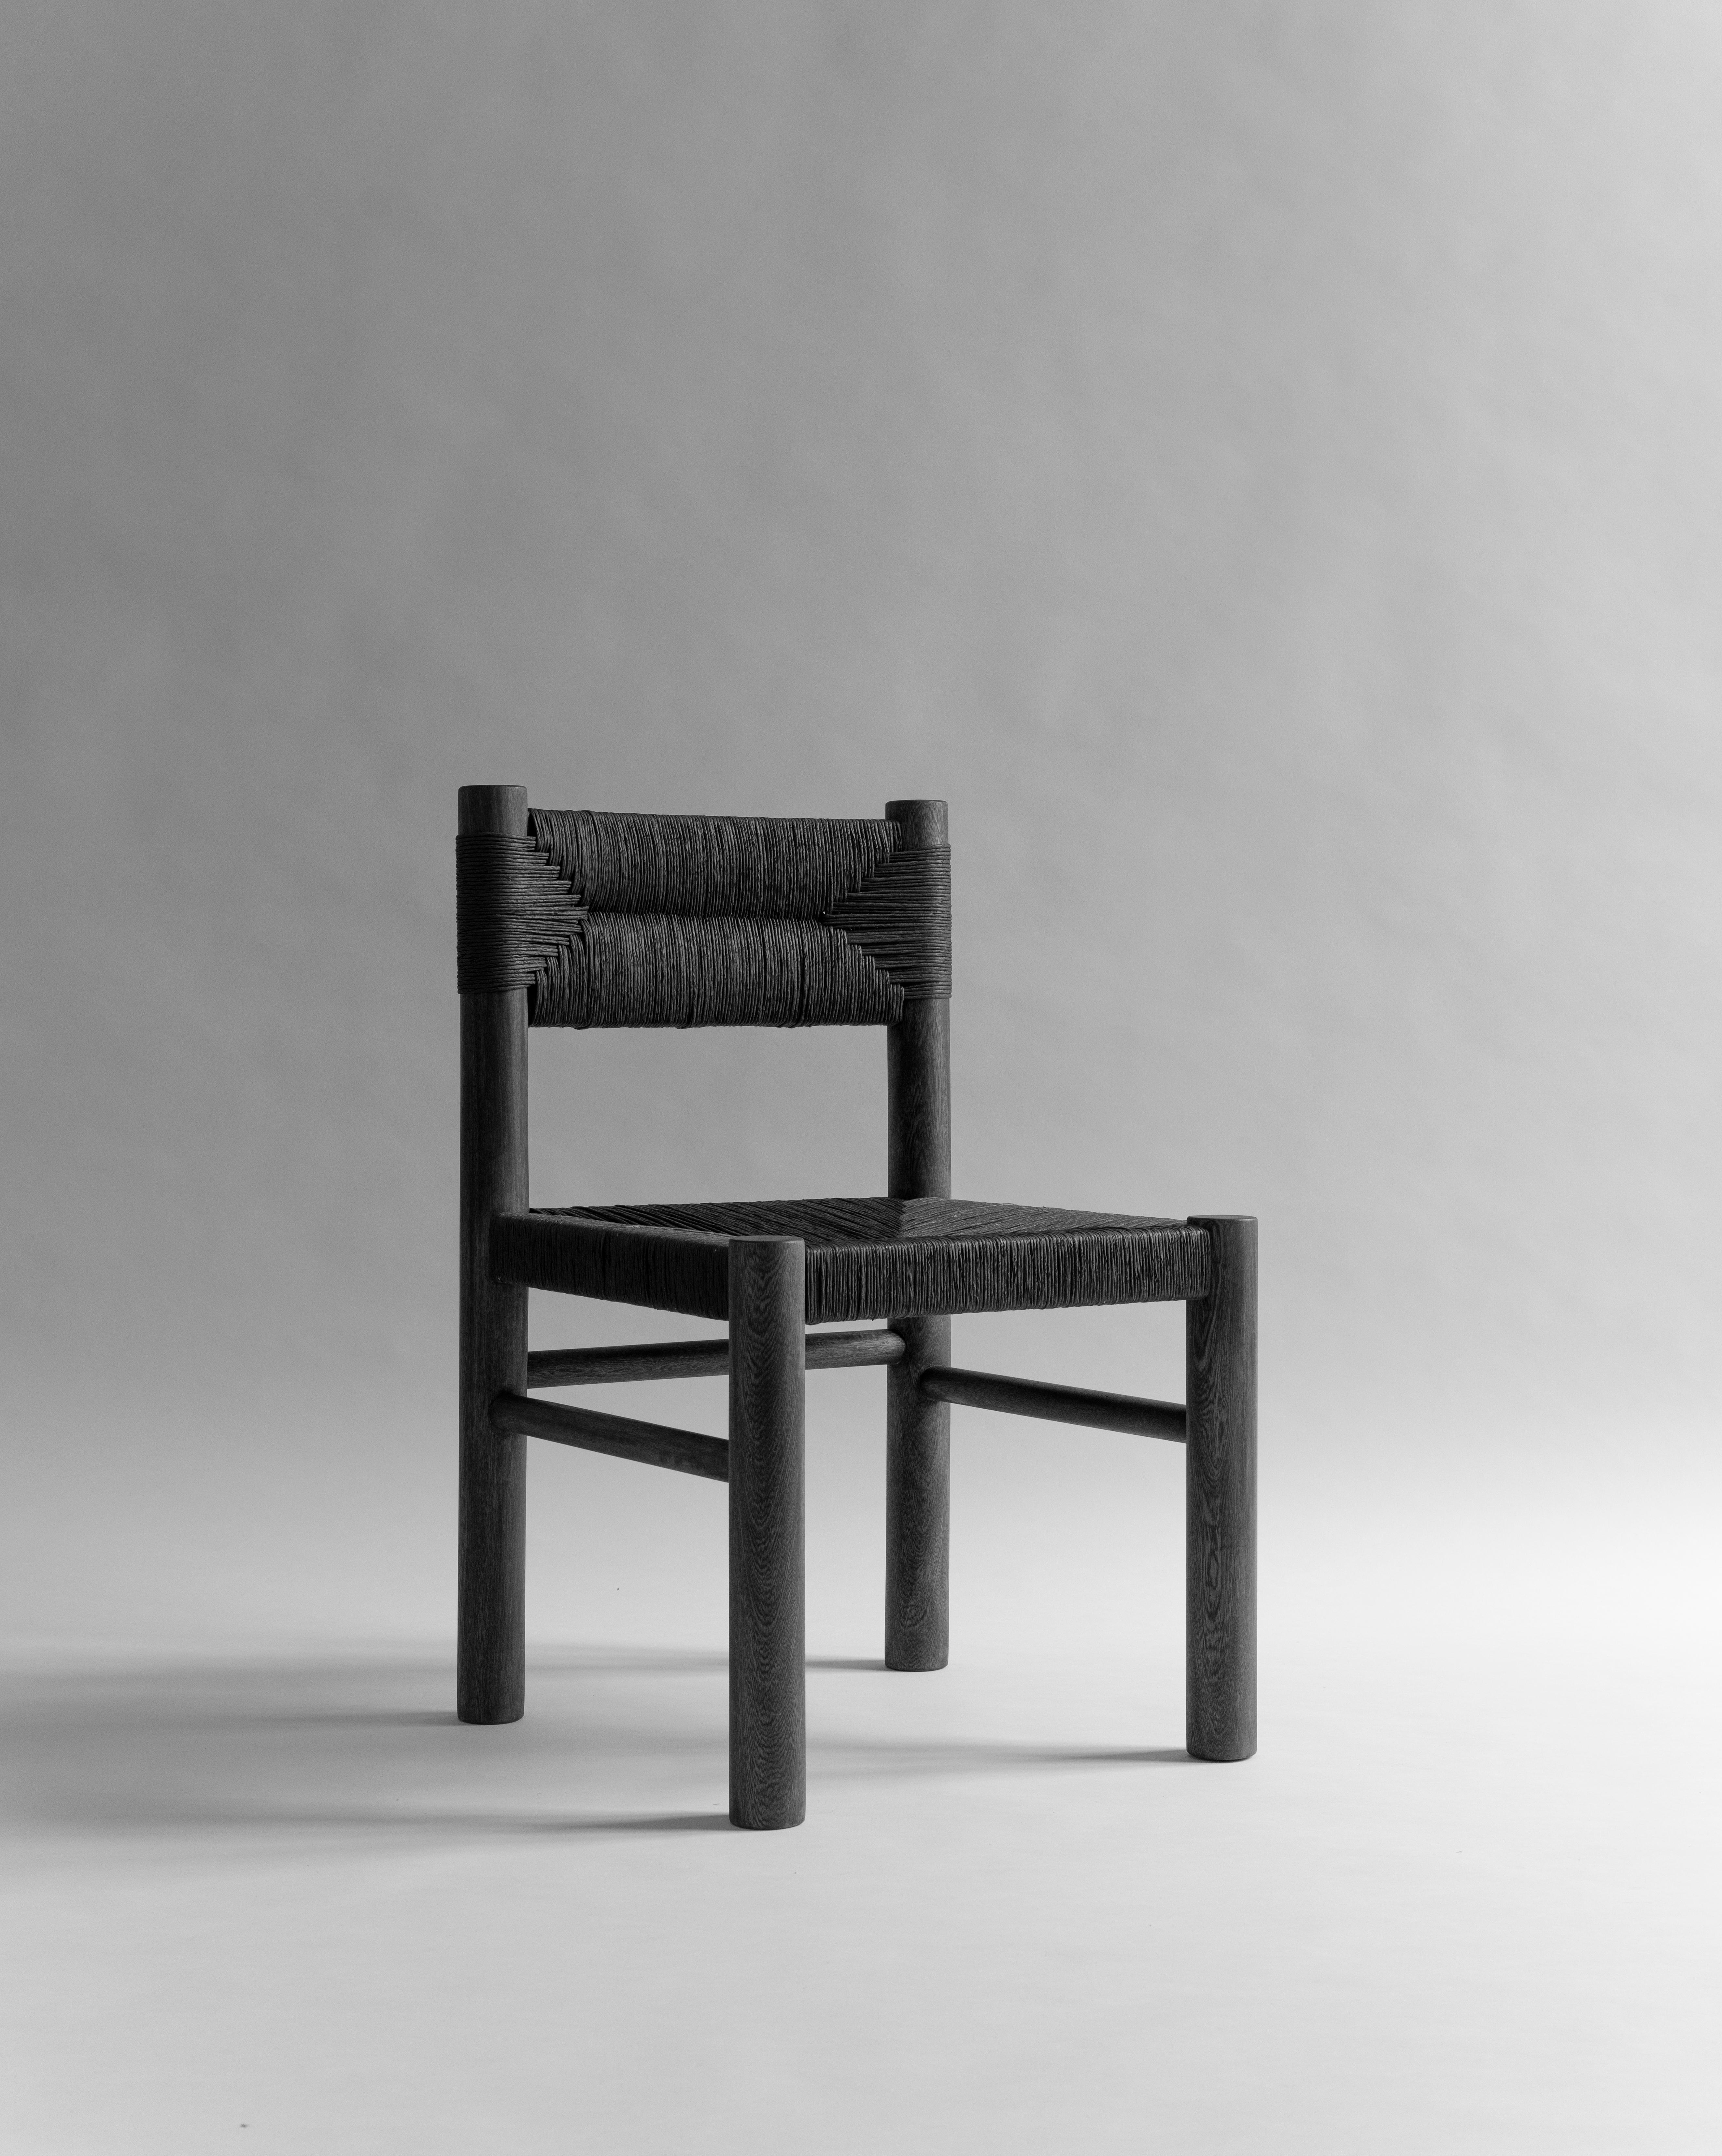 Lava Woven Stuhl (2022)
Von Habitacion 116
Pigmentiertes mexikanisches Tropenholz
Pigmentierte Papierschnur
Farben: Recinto (grau) Tezontle (rot) Basalto (schwarz) Pomez (natur) Toba (braun)

Auf der Grundlage des emblematischen Stuhls, der